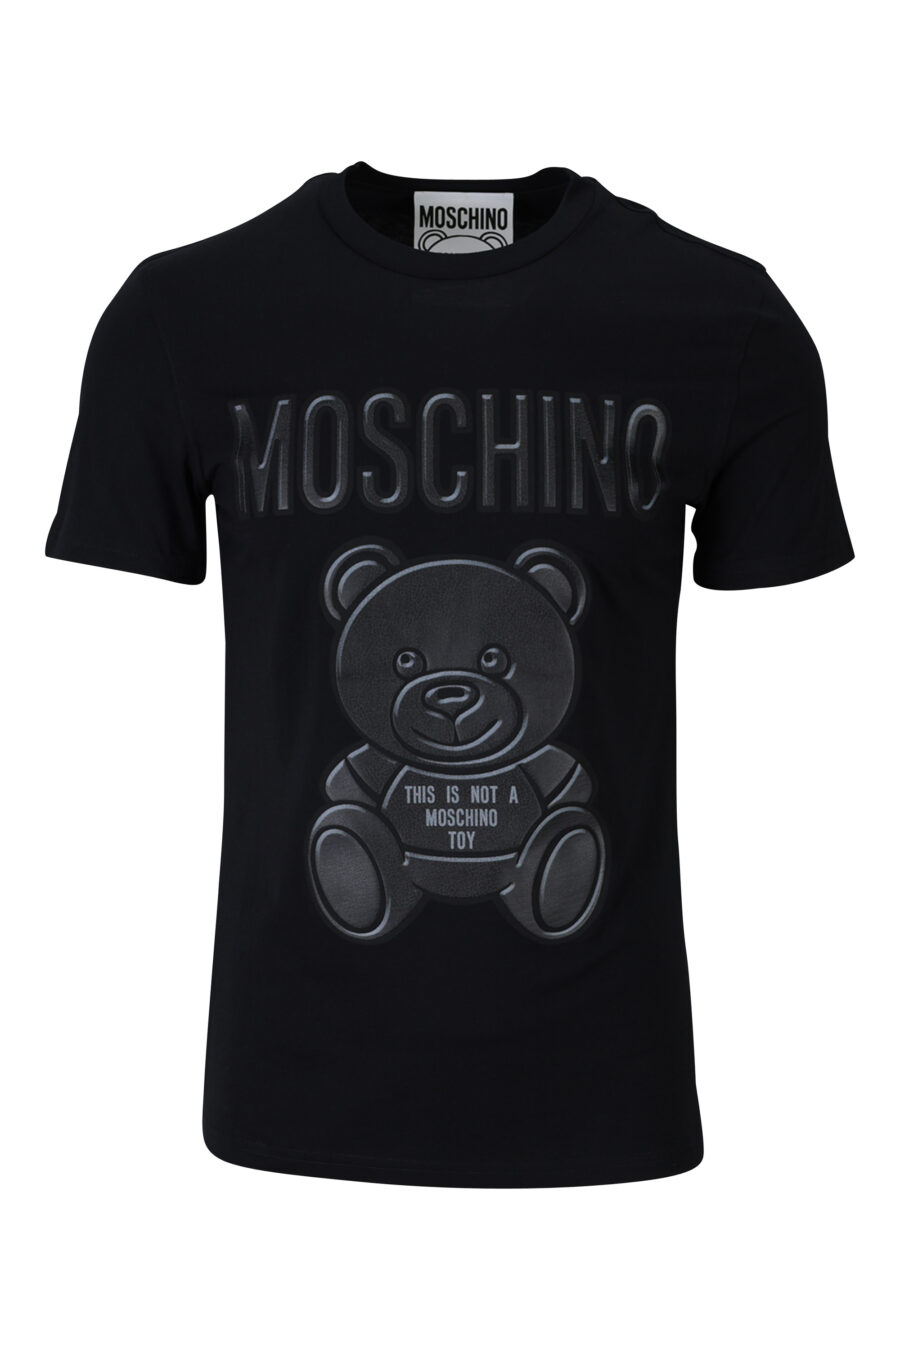 T-shirt preta de algodão orgânico com maxilogo "teddy" - 889316854589